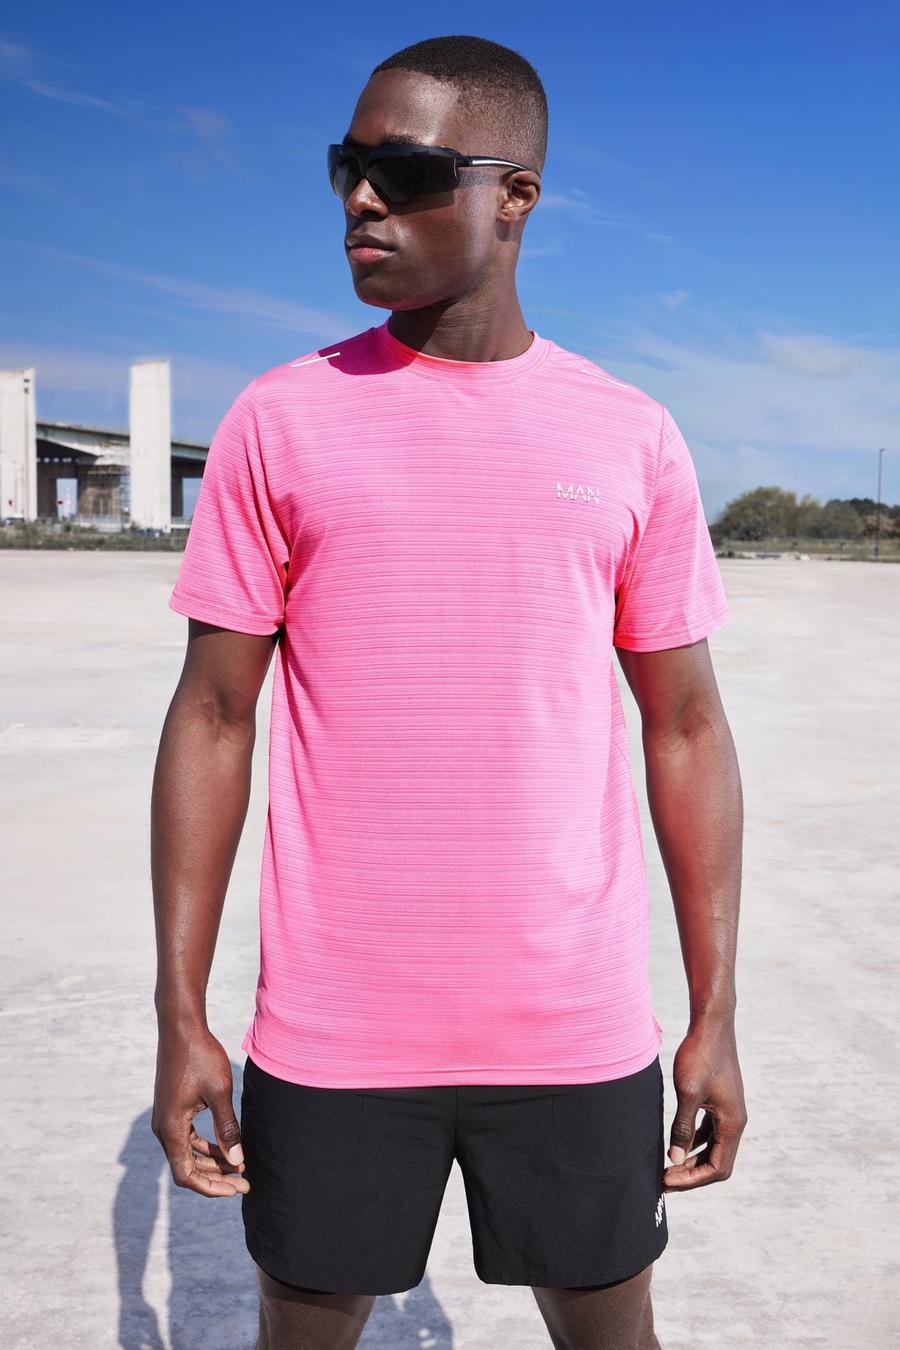 Man Active Lightweight Performance T-Shirt, Neon-pink